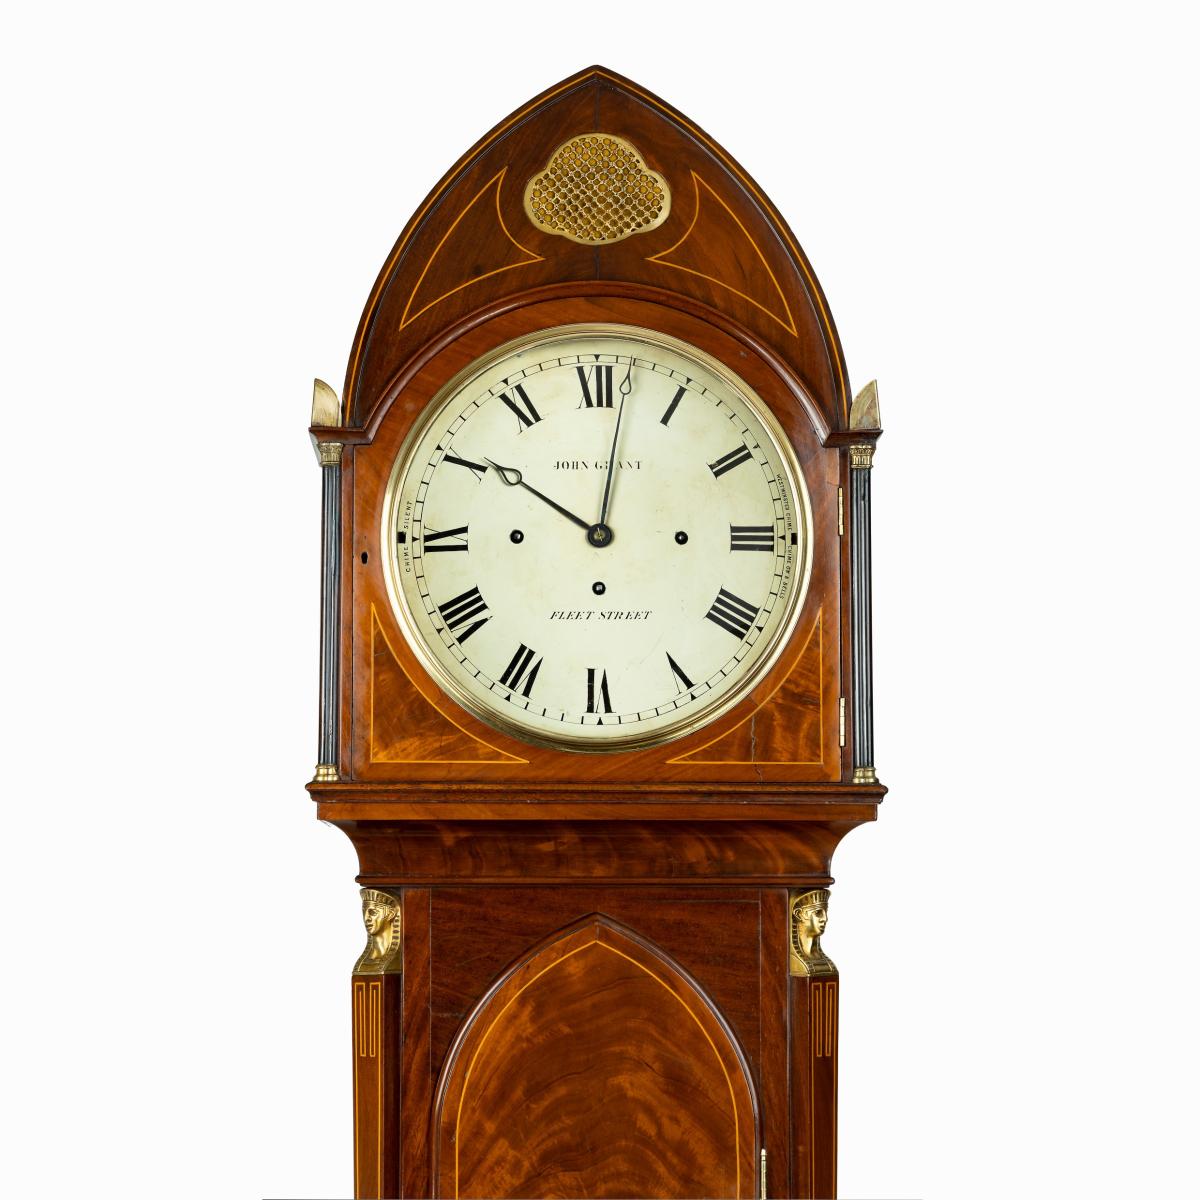 Regency Egyptian style mahogany longcase clock by John Grant